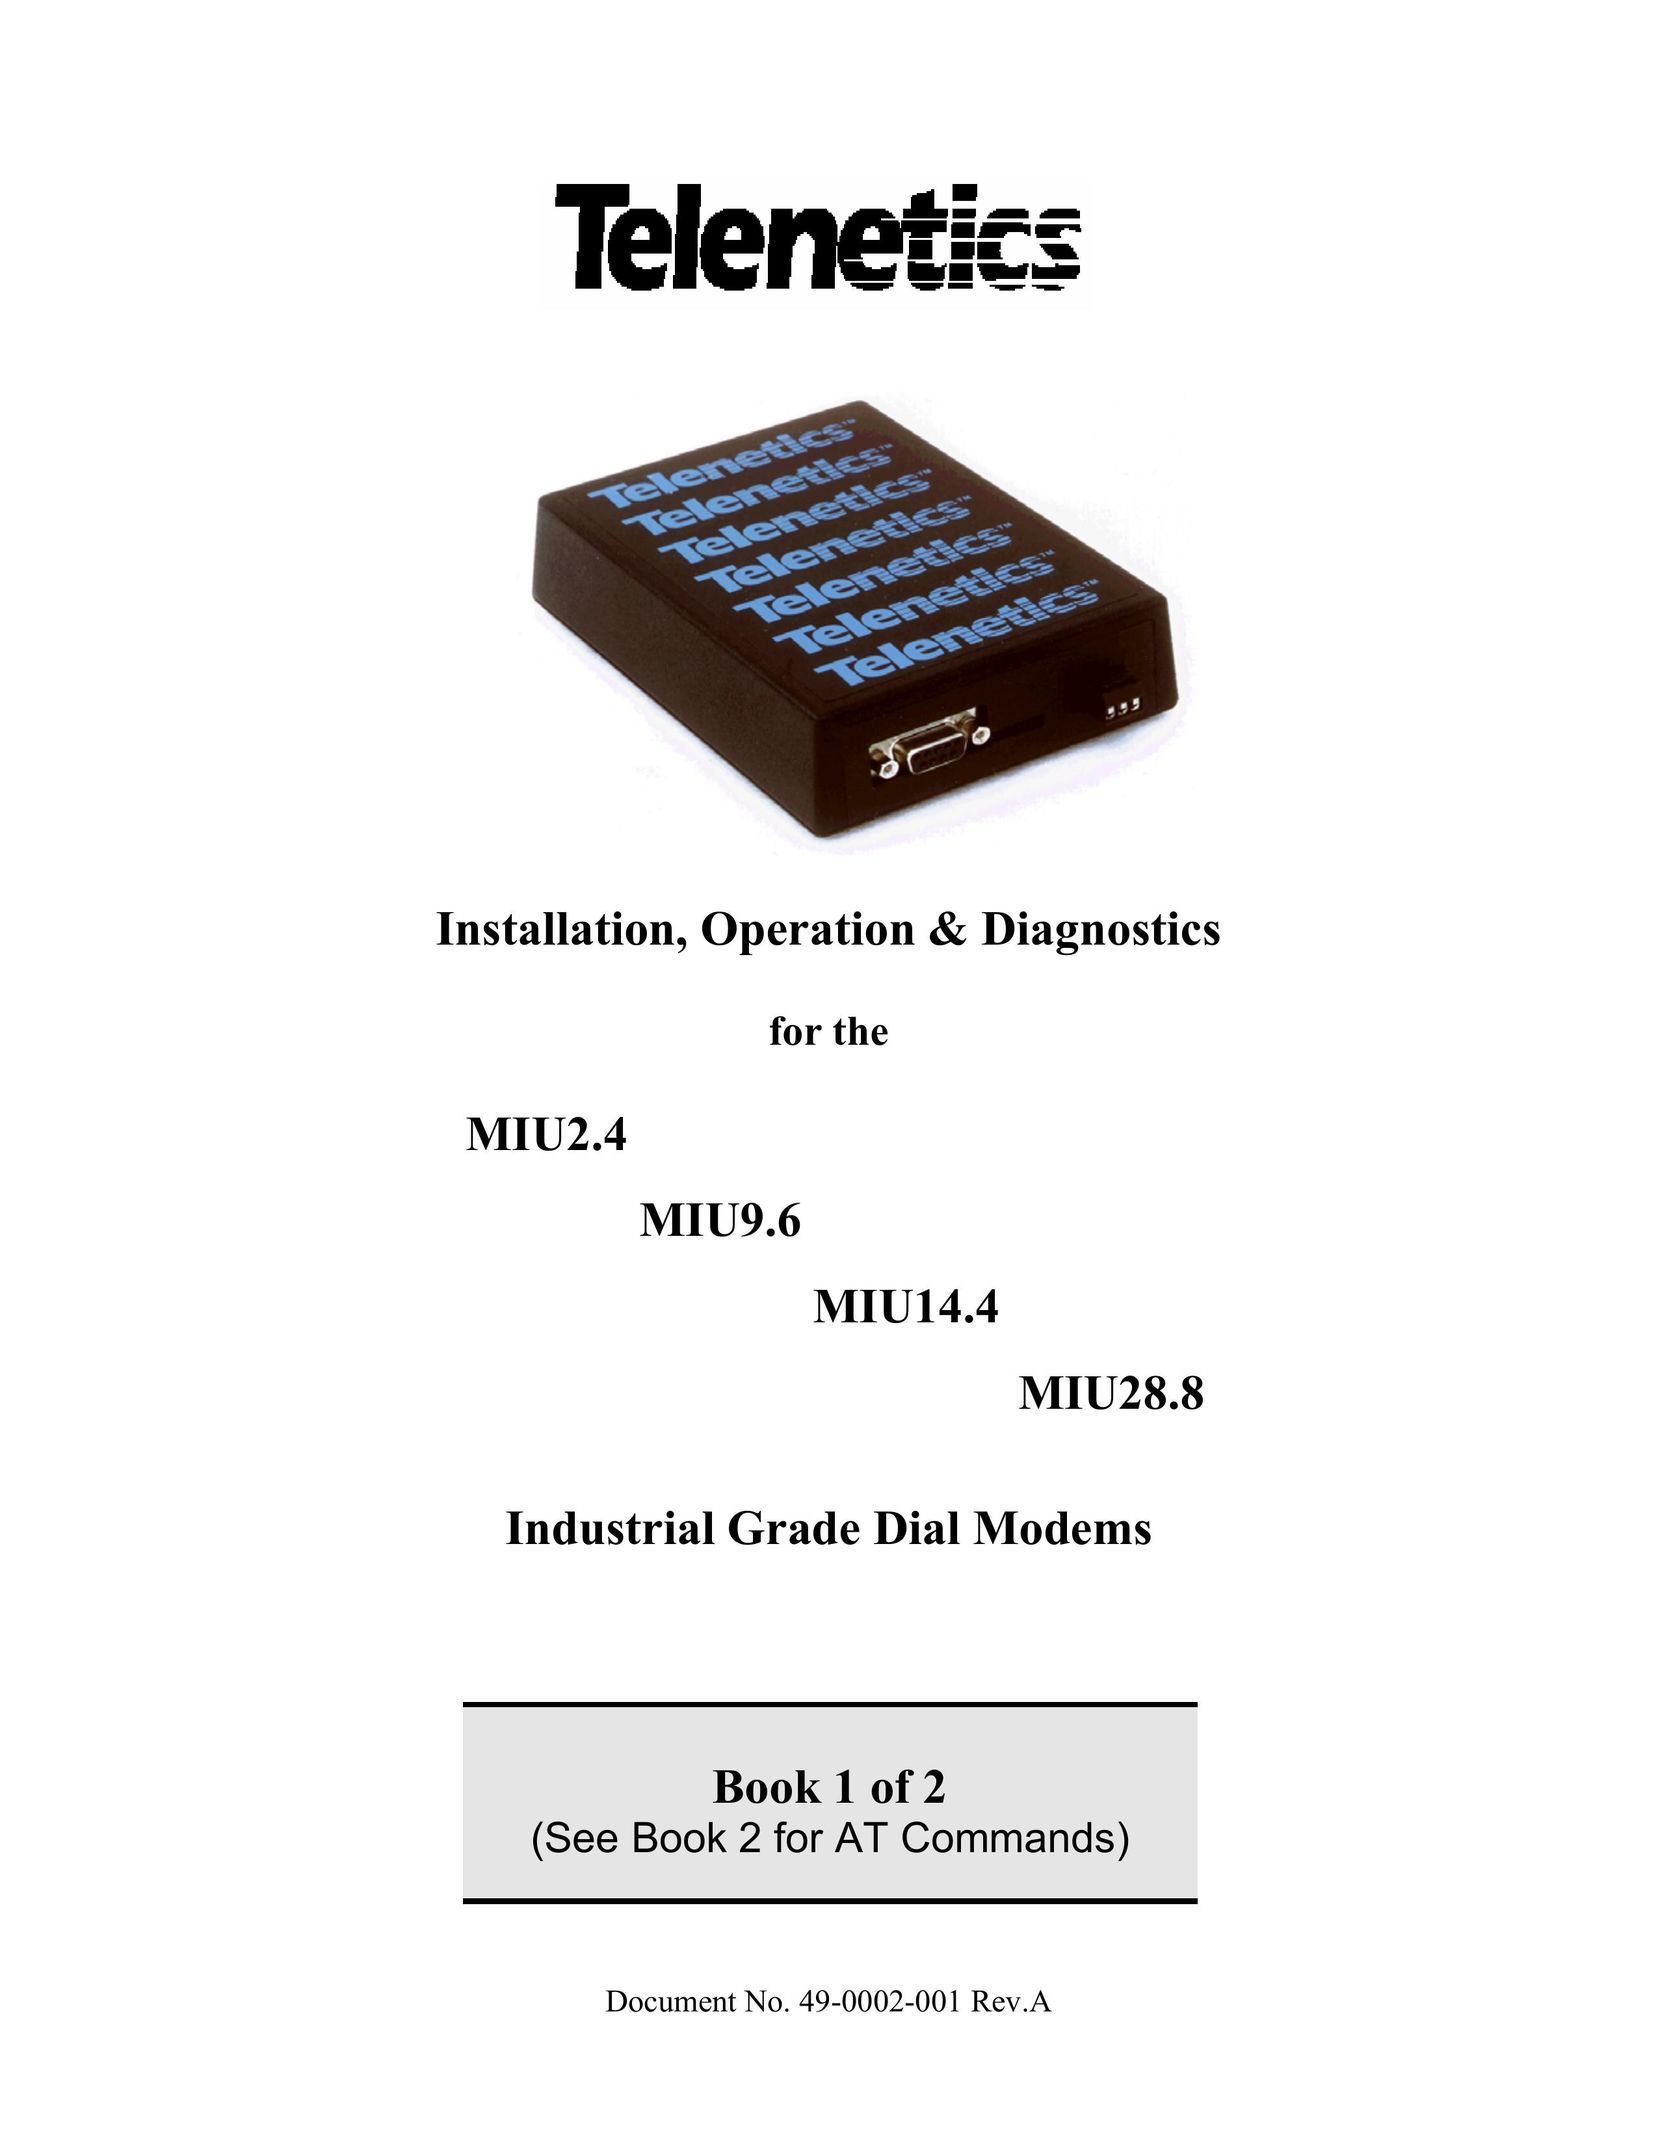 Telenetics MIU14.4 Network Card User Manual